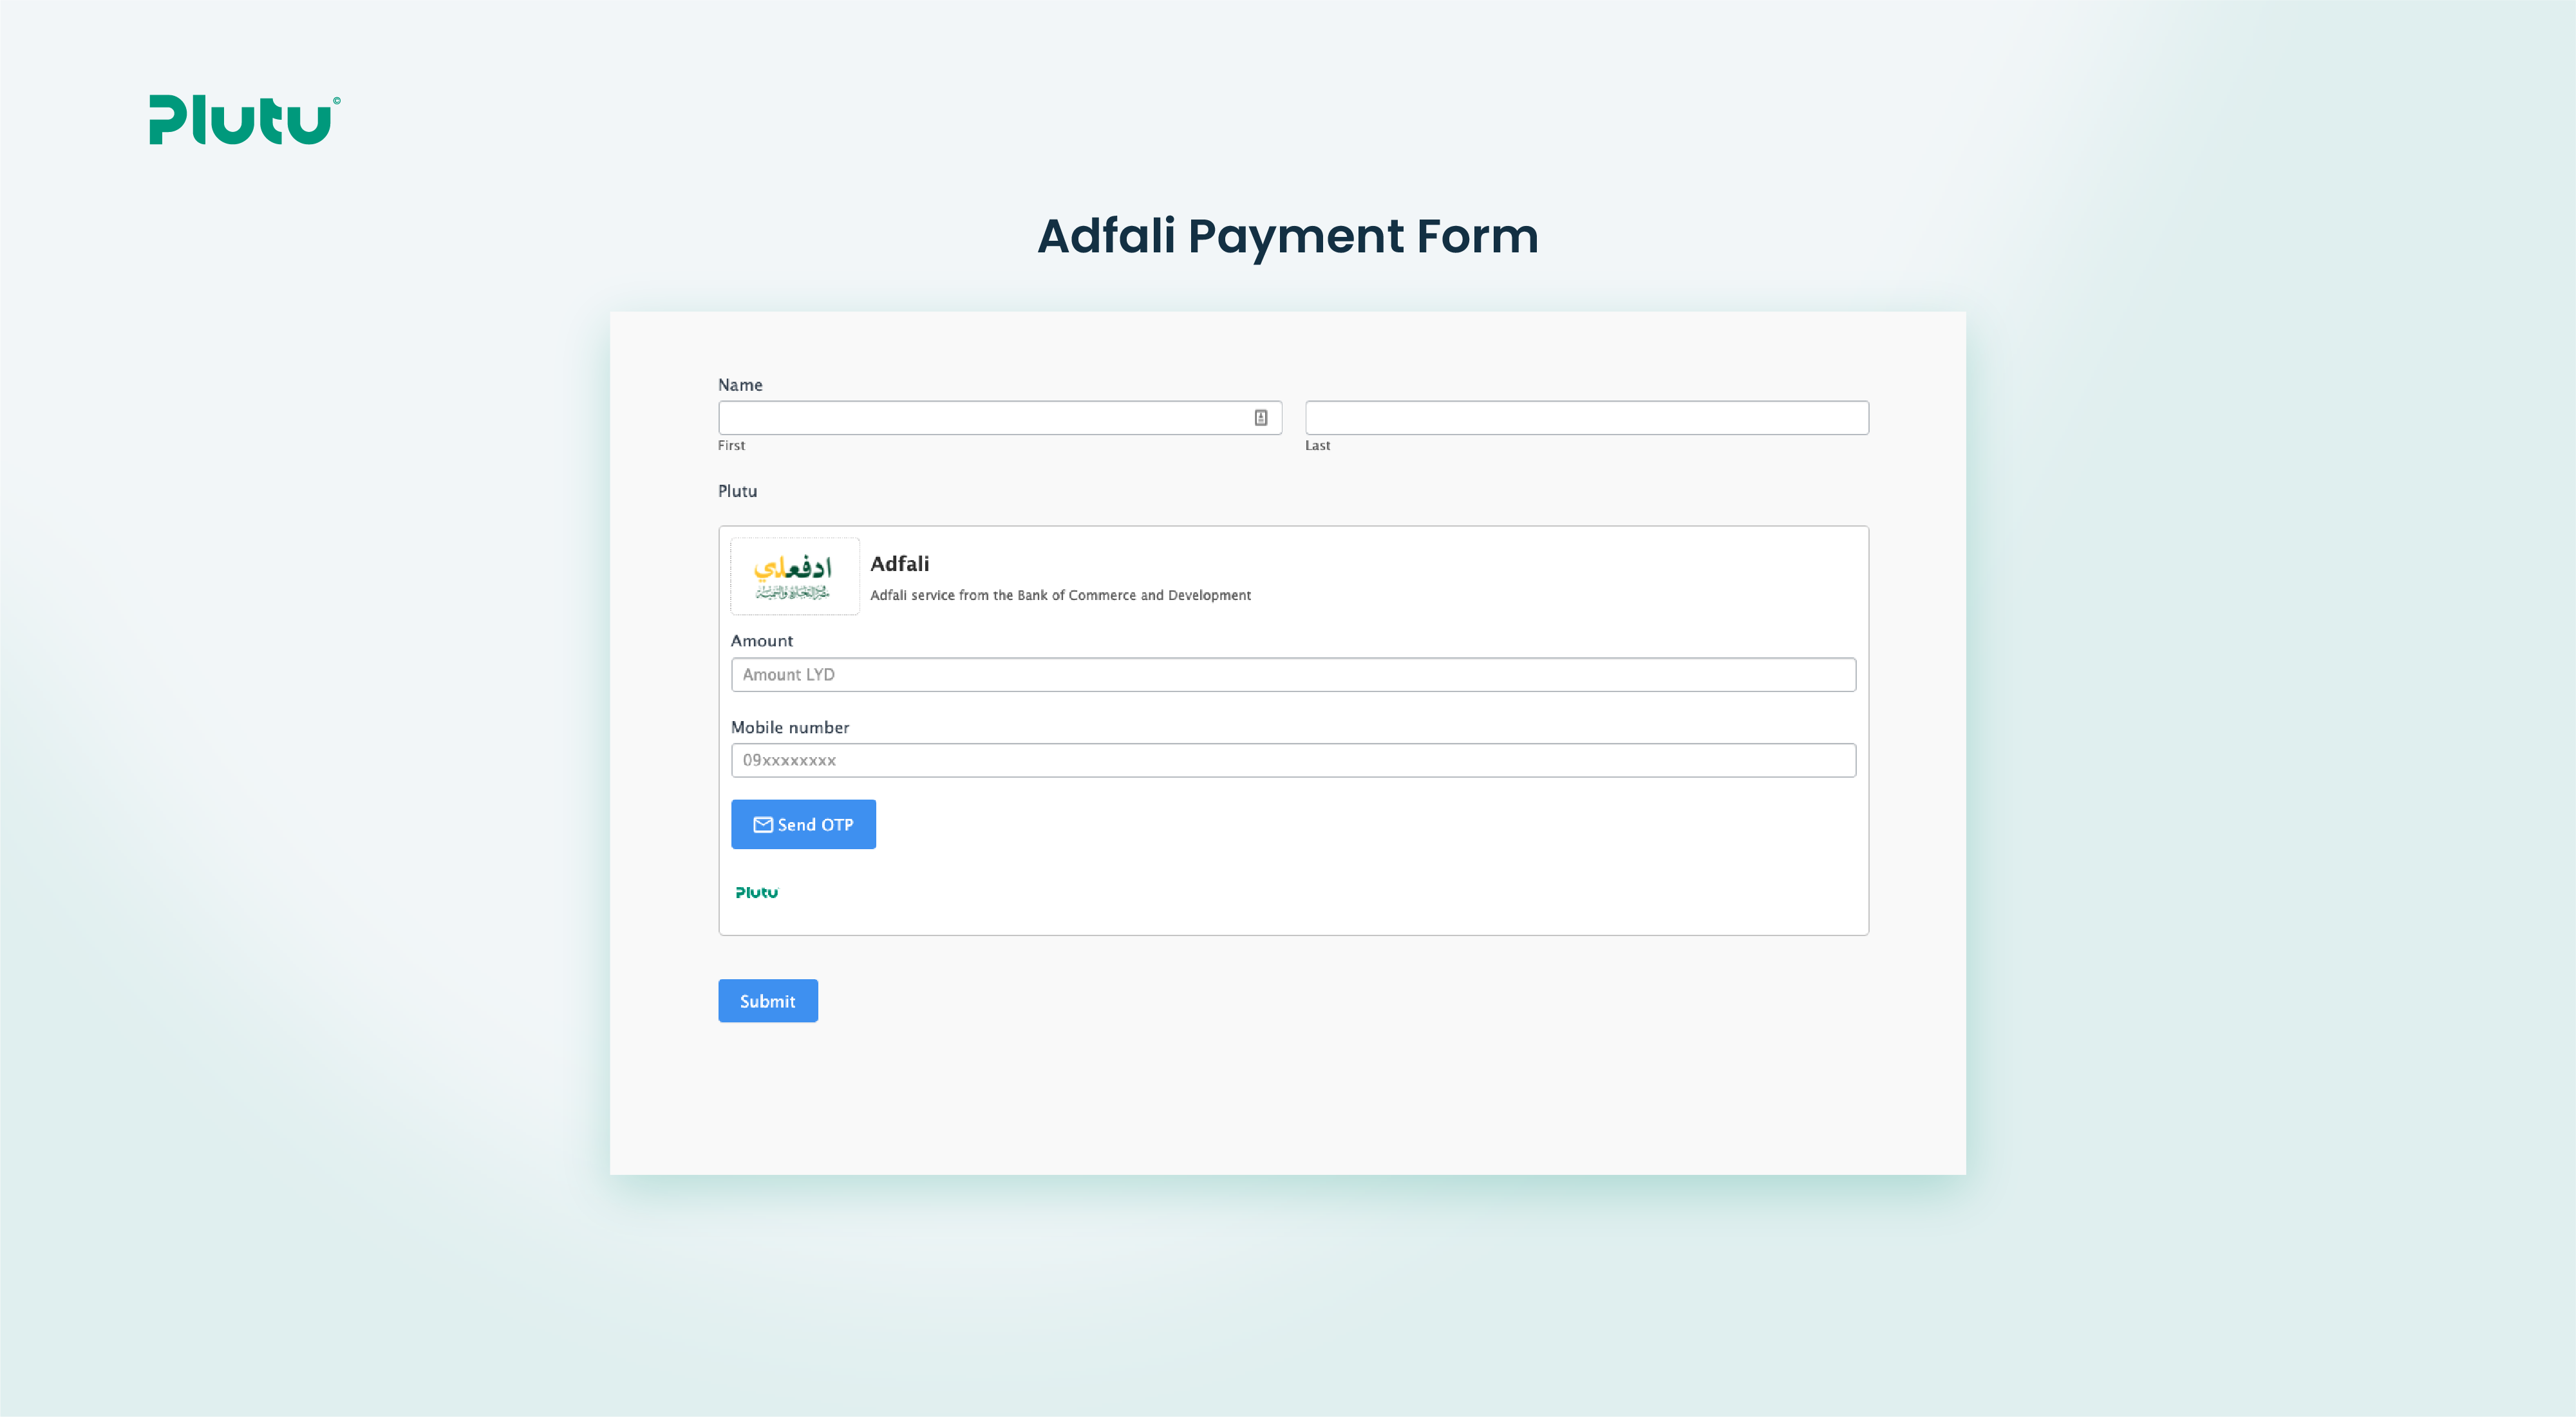 Adfali Payment Form